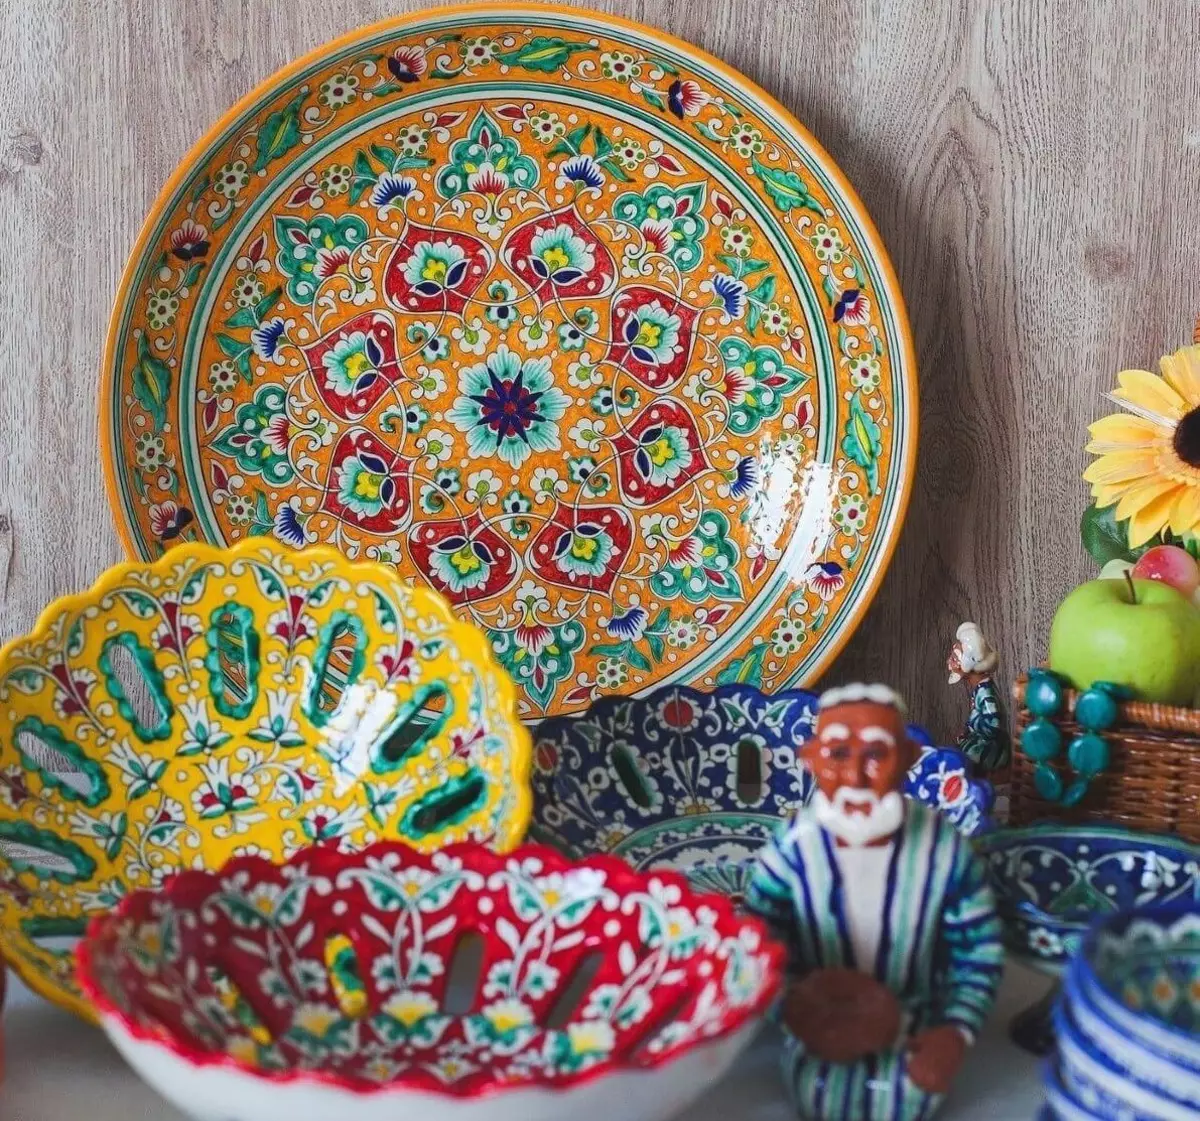 أطباق الأوزبكي (25 صور): ملامح من مجموعات الشاي، لوحات، لوحة وأطباق وطنية أخرى من إنتاج أوزبكستان 